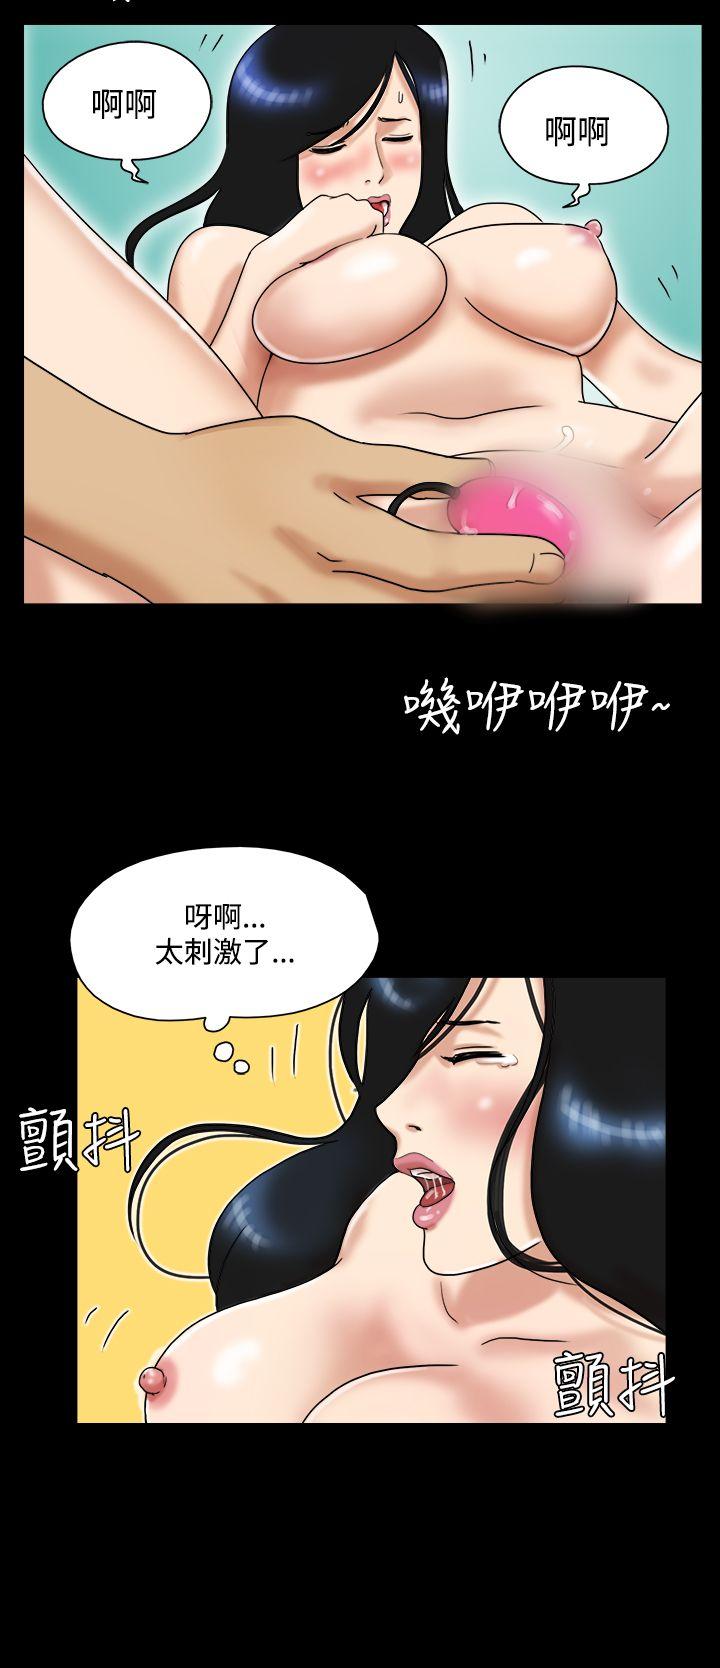 韩国污漫画 17種性幻想第一季 第30话 9